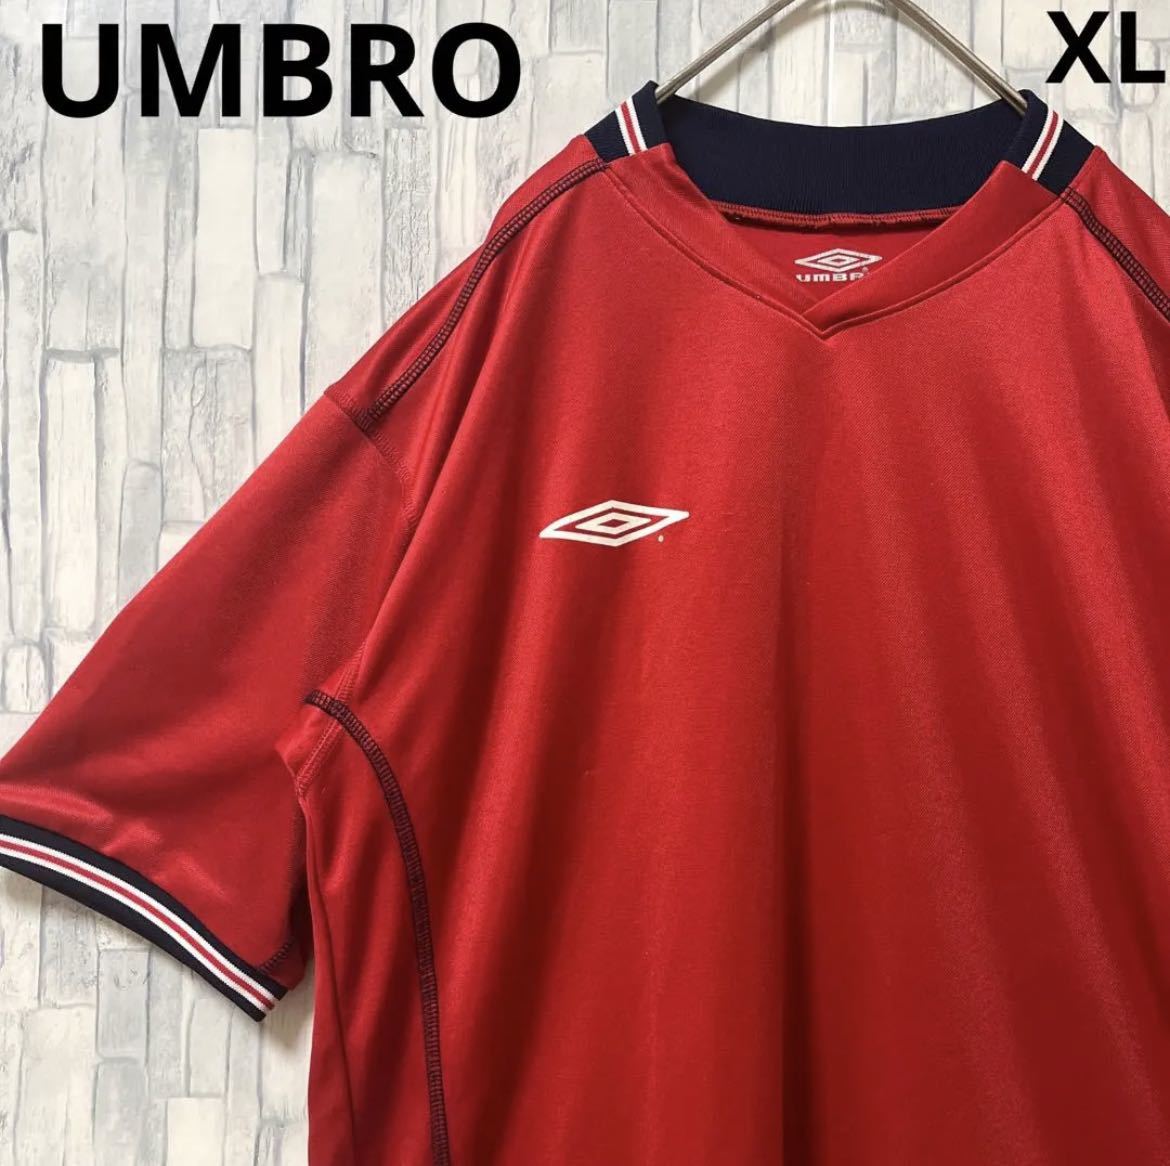 UMBRO アンブロ サッカー ゲームシャツ ユニフォーム 半袖 シンプルロゴ ワンポイントロゴ サイズXL リンガー デサント 送料無料